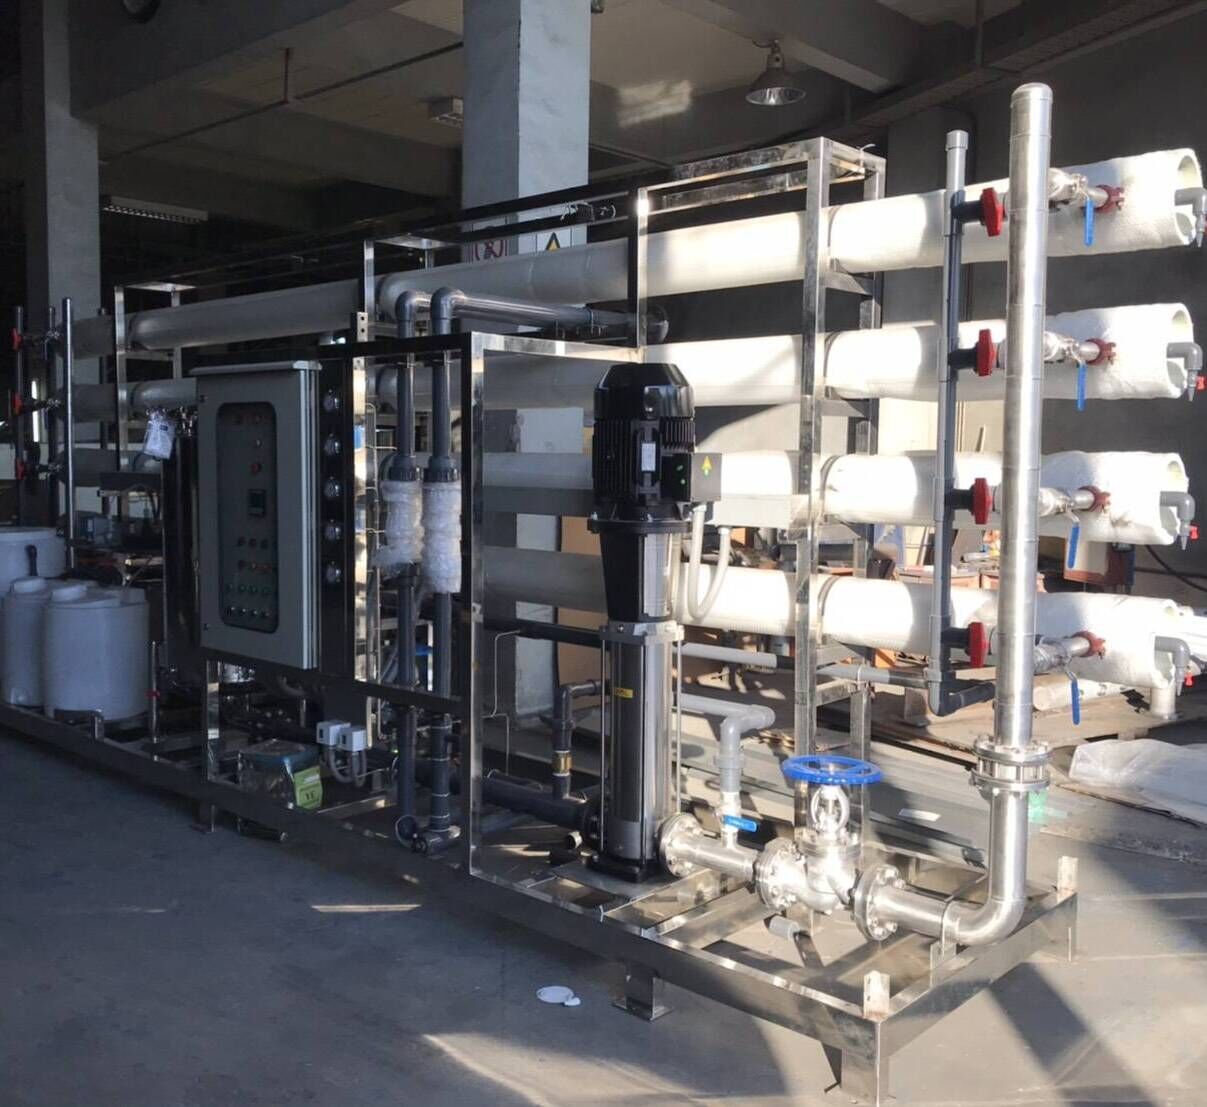 เครื่องกรองน้ำอุตสาหกรรม RO โรงงาน ระบบผลิตน้ำใช้ roโรงงาน ระบบSofener DI UF ระบบกรองน้ำบาดาล ระบบประปา ระบบรีไซเคิลน้ำ